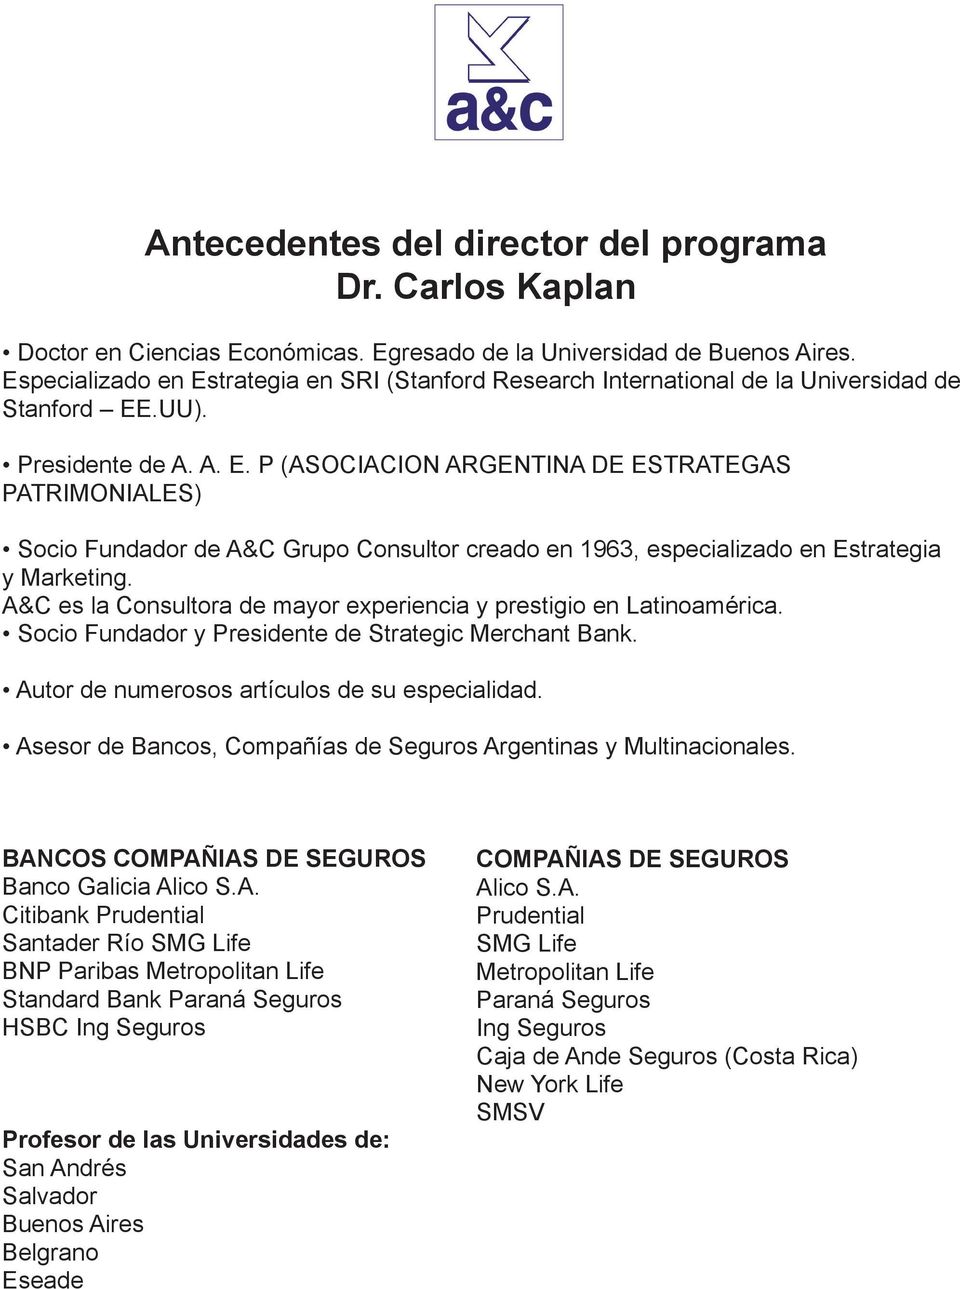 A&C es la Consultora de mayor experiencia y prestigio en Latinoamérica. Socio Fundador y Presidente de Strategic Merchant Bank. Autor de numerosos artículos de su especialidad.